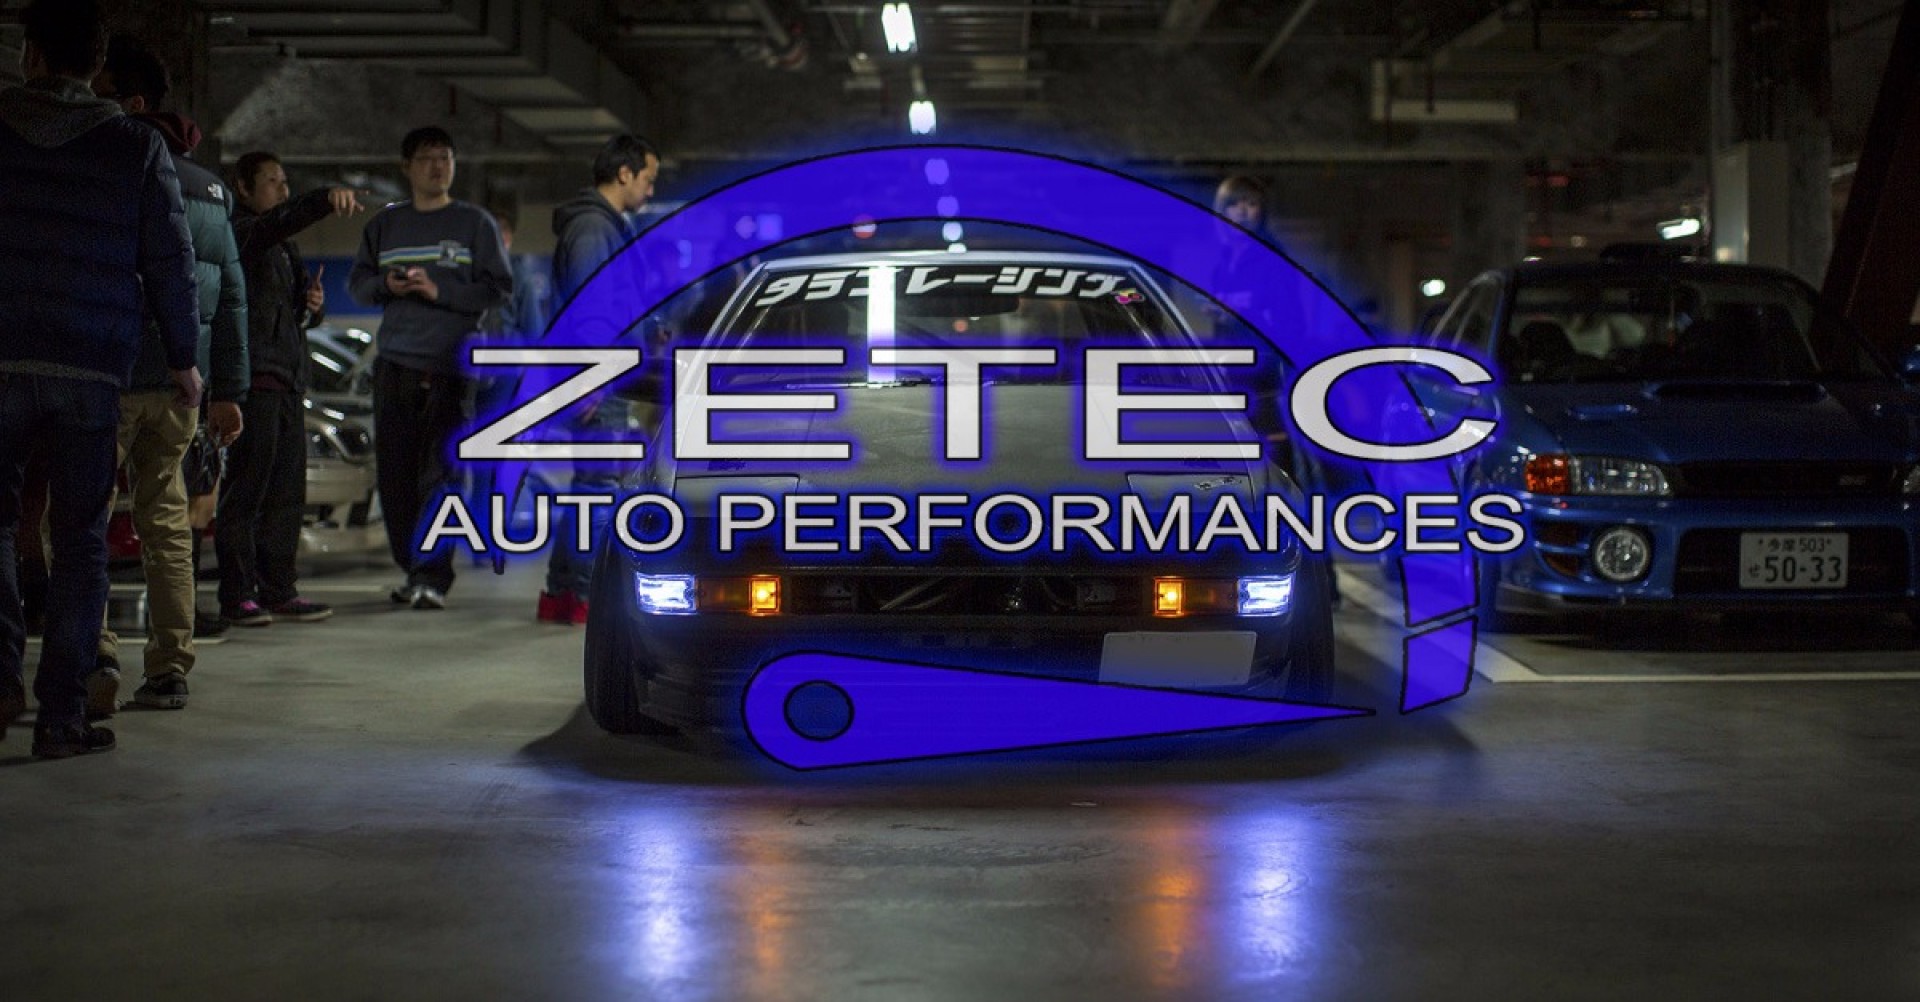 ZETEC AUTO PERFORMANCES logo